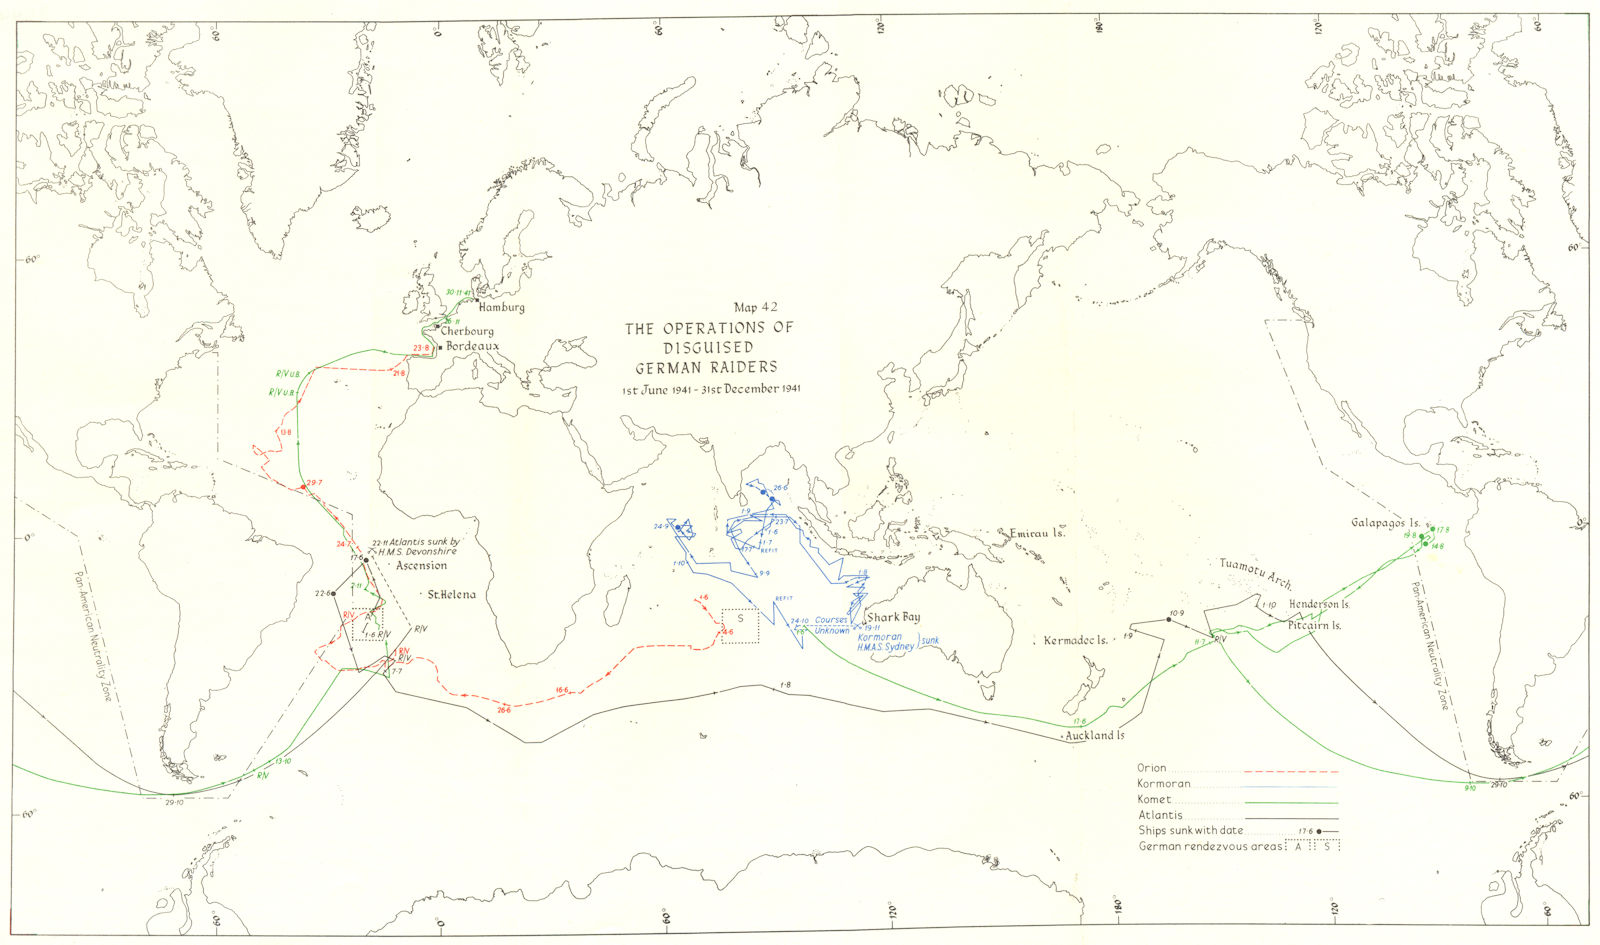 OCEAN WARFARE. Operations of disguised German Raiders, June-Dec 1941 1954 map